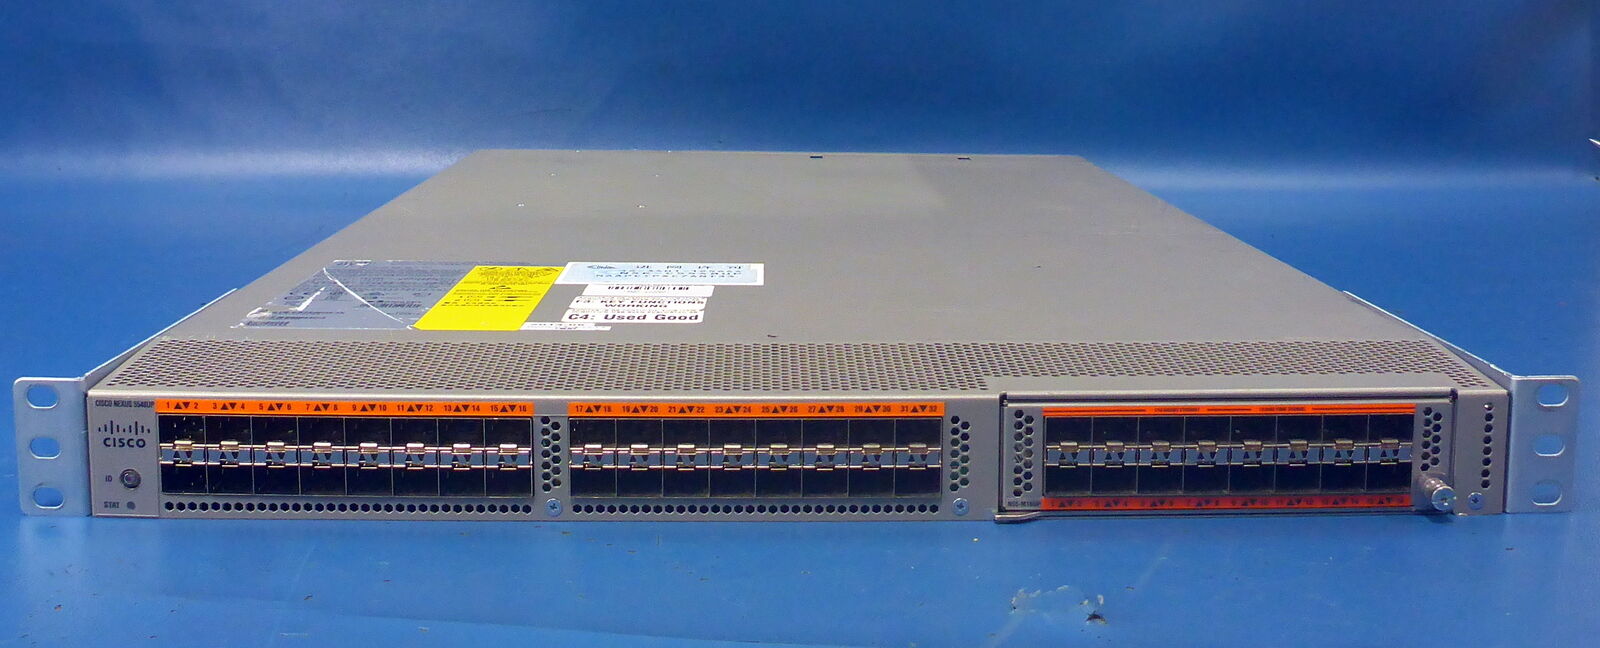 Cisco Nexus 5548UP w/ 16-Port Gigabit SFP Plug-In | N5K-C5548UP N55-M16UP